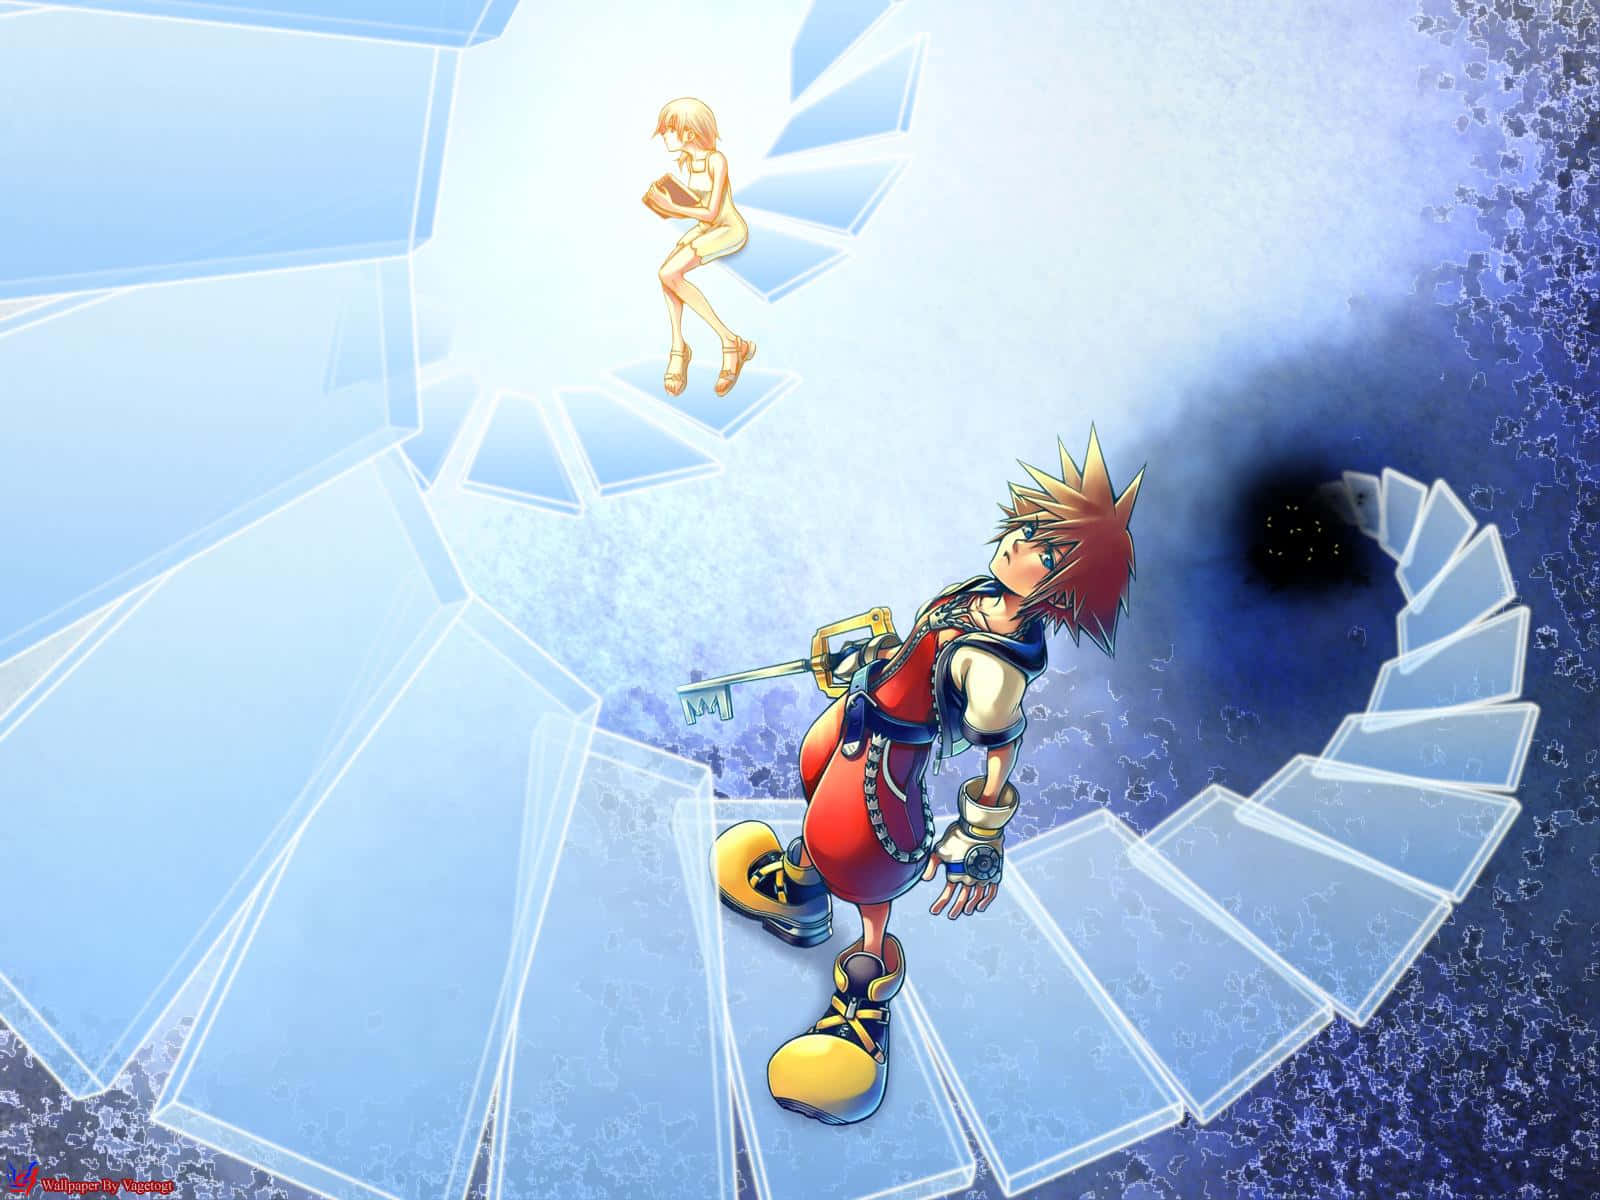 Sora's Adventure in the Realm of Kingdom Hearts Wallpaper